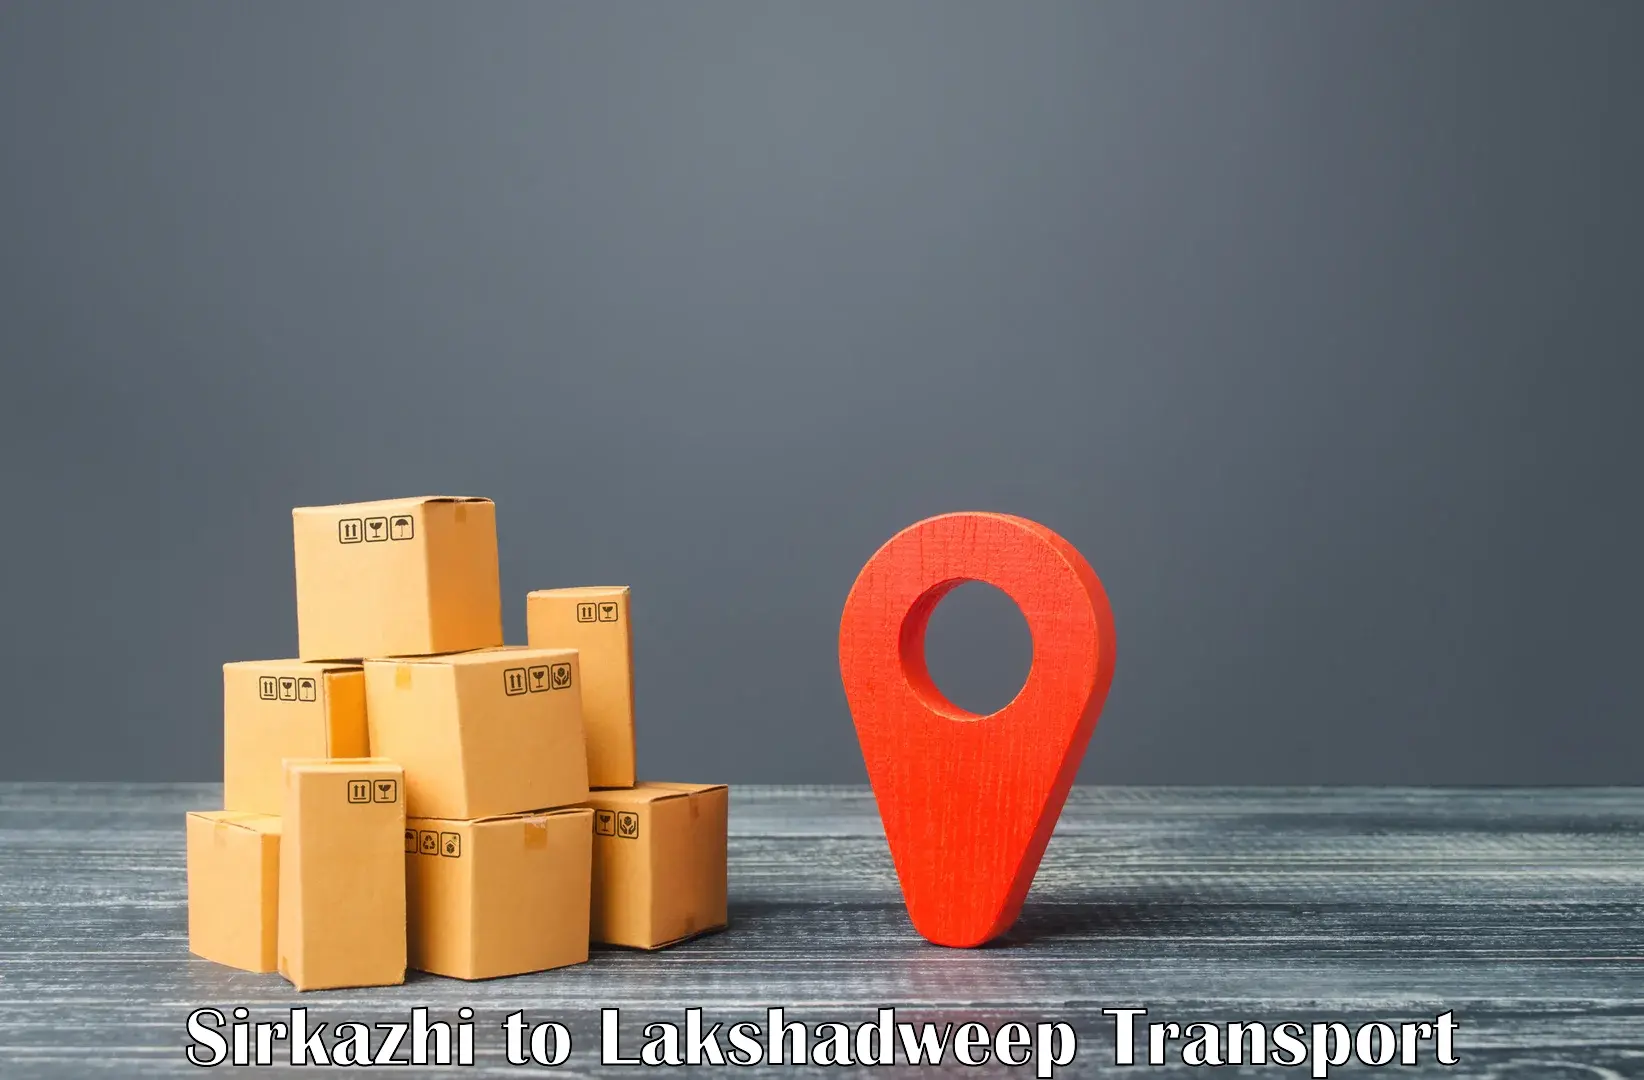 Interstate transport services Sirkazhi to Lakshadweep